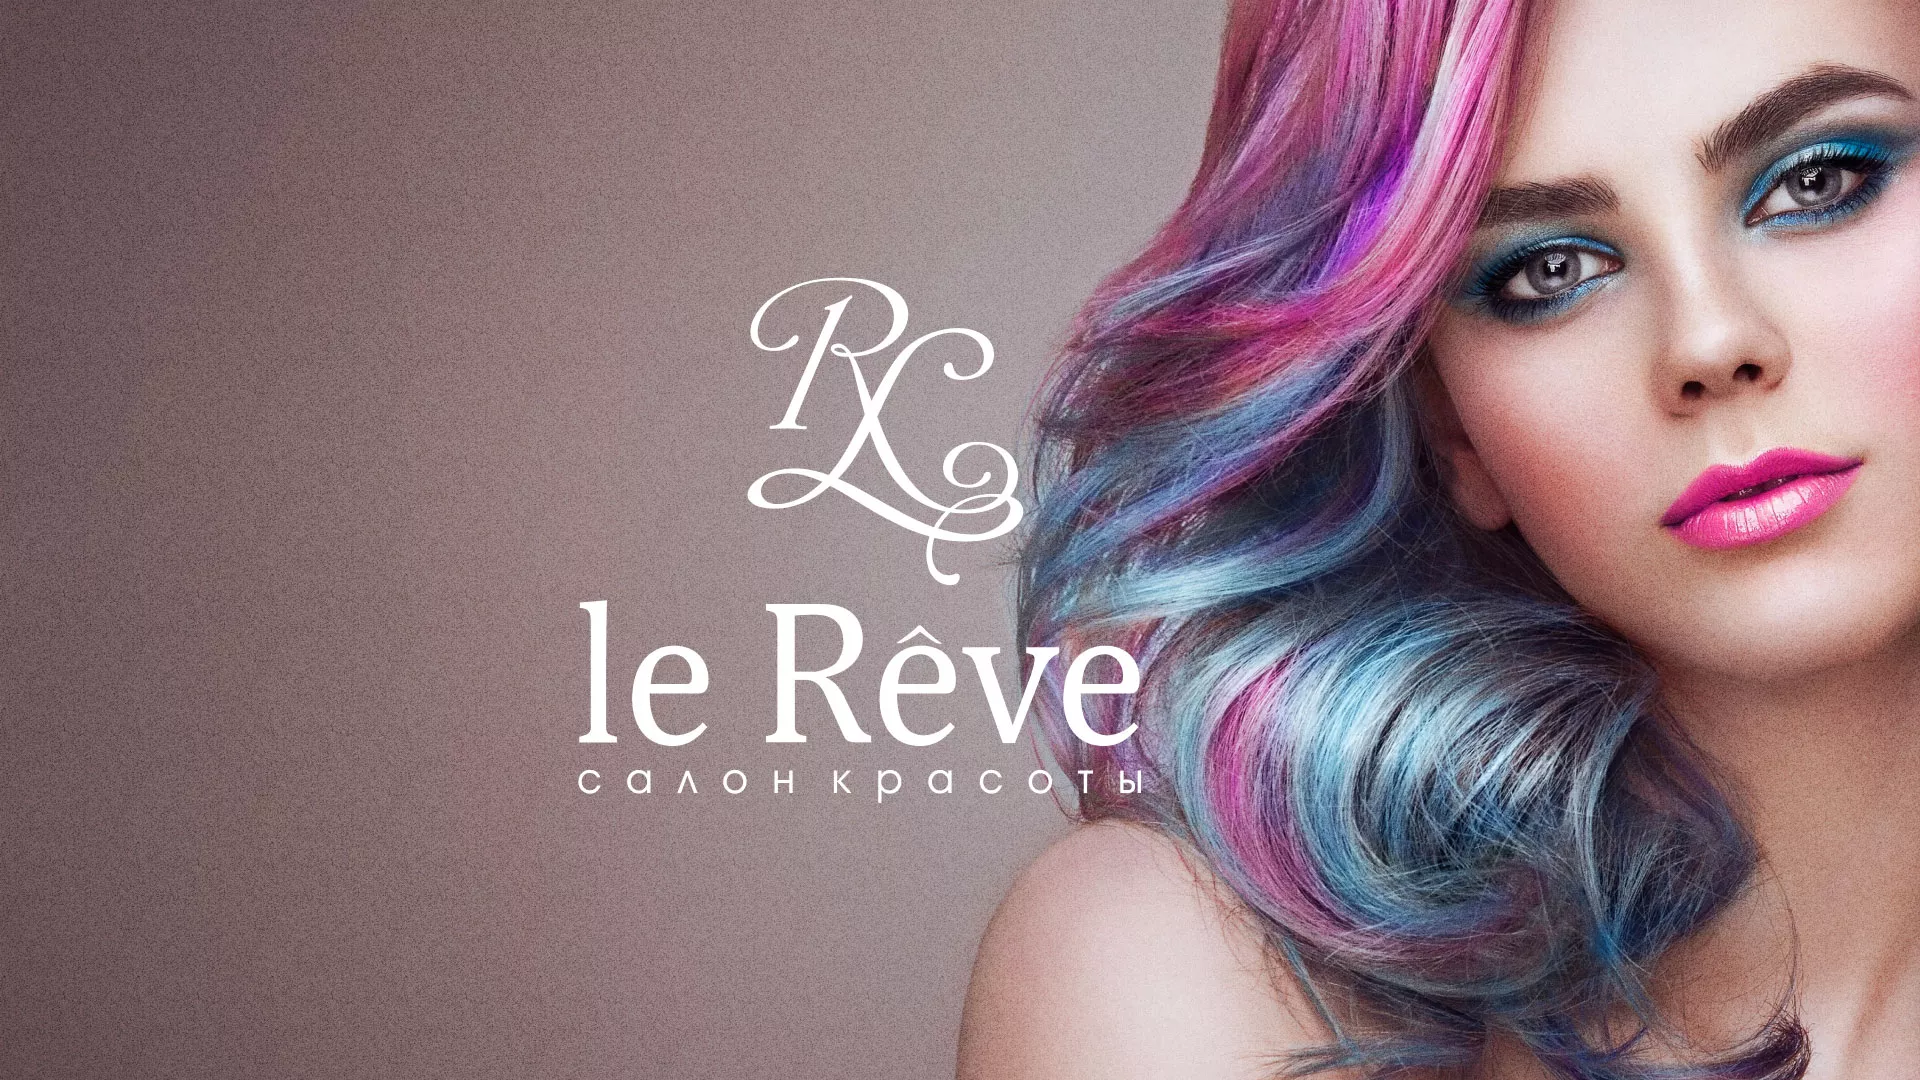 Создание сайта для салона красоты «Le Reve» в Новохопёрске